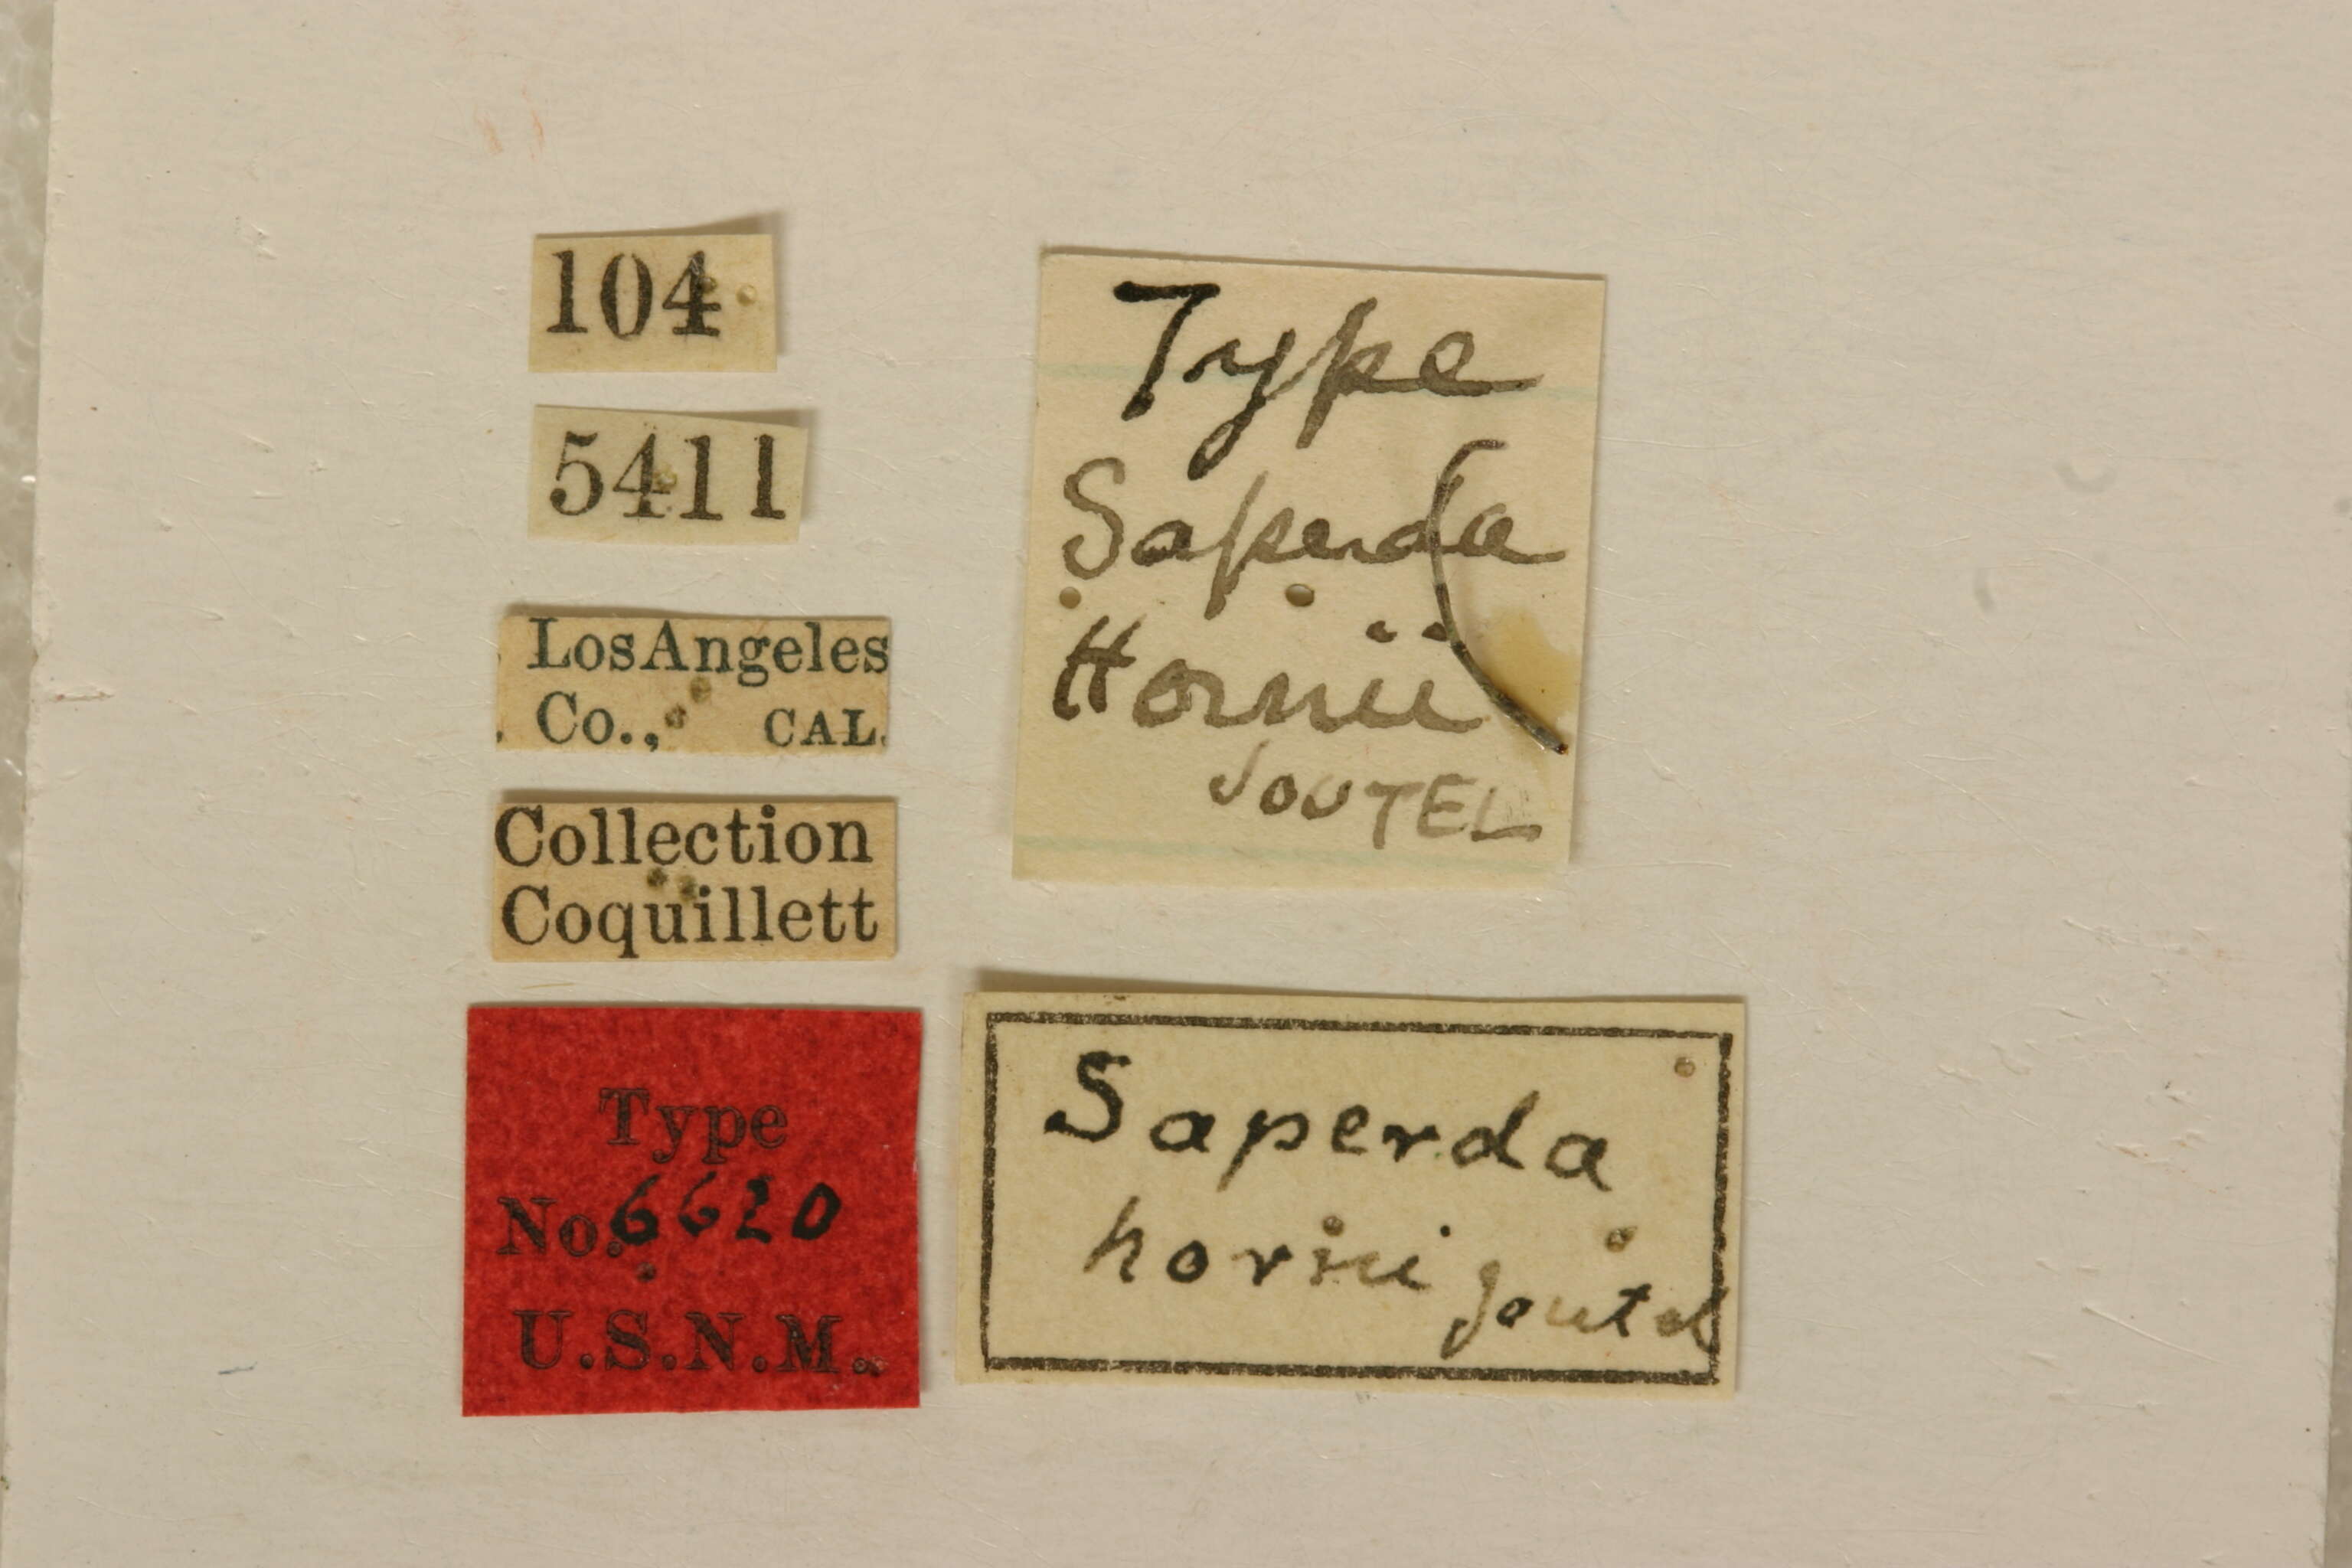 Image of Saperda hornii Joutel 1902